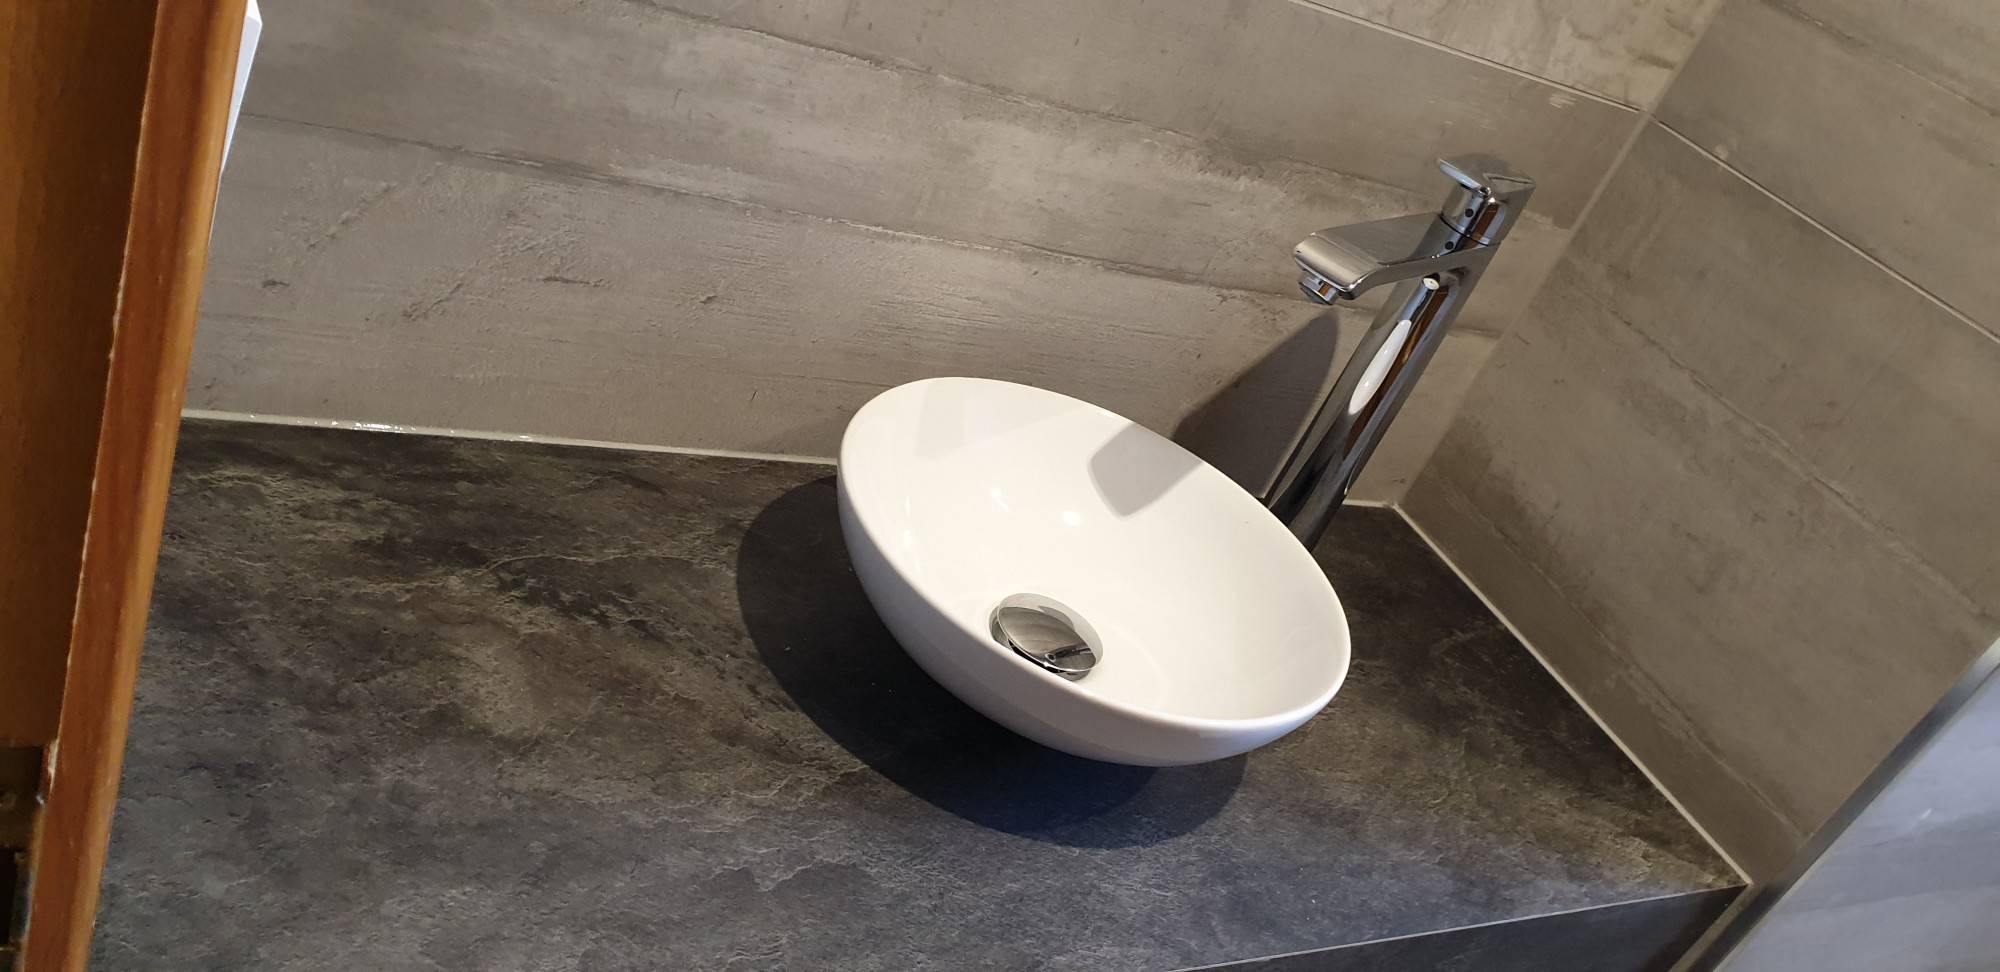 Création de salles de bain à Huningue proche de Saint-Louis : conception sur mesure et installation Mulhouse 1